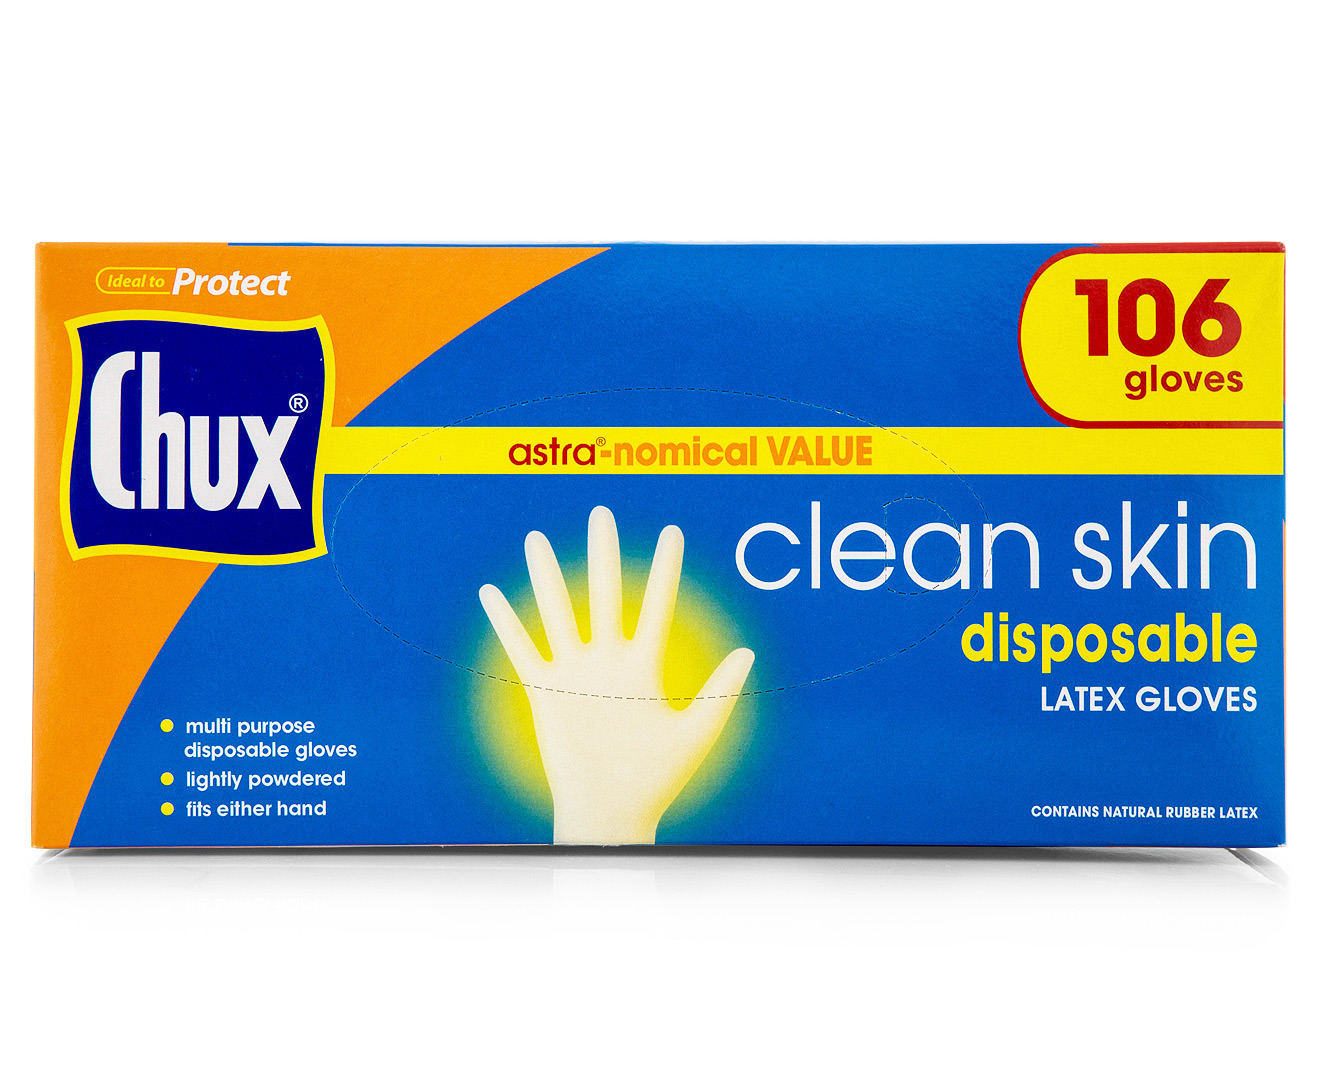 Chux Clean Skin Disposable Gloves 106pk